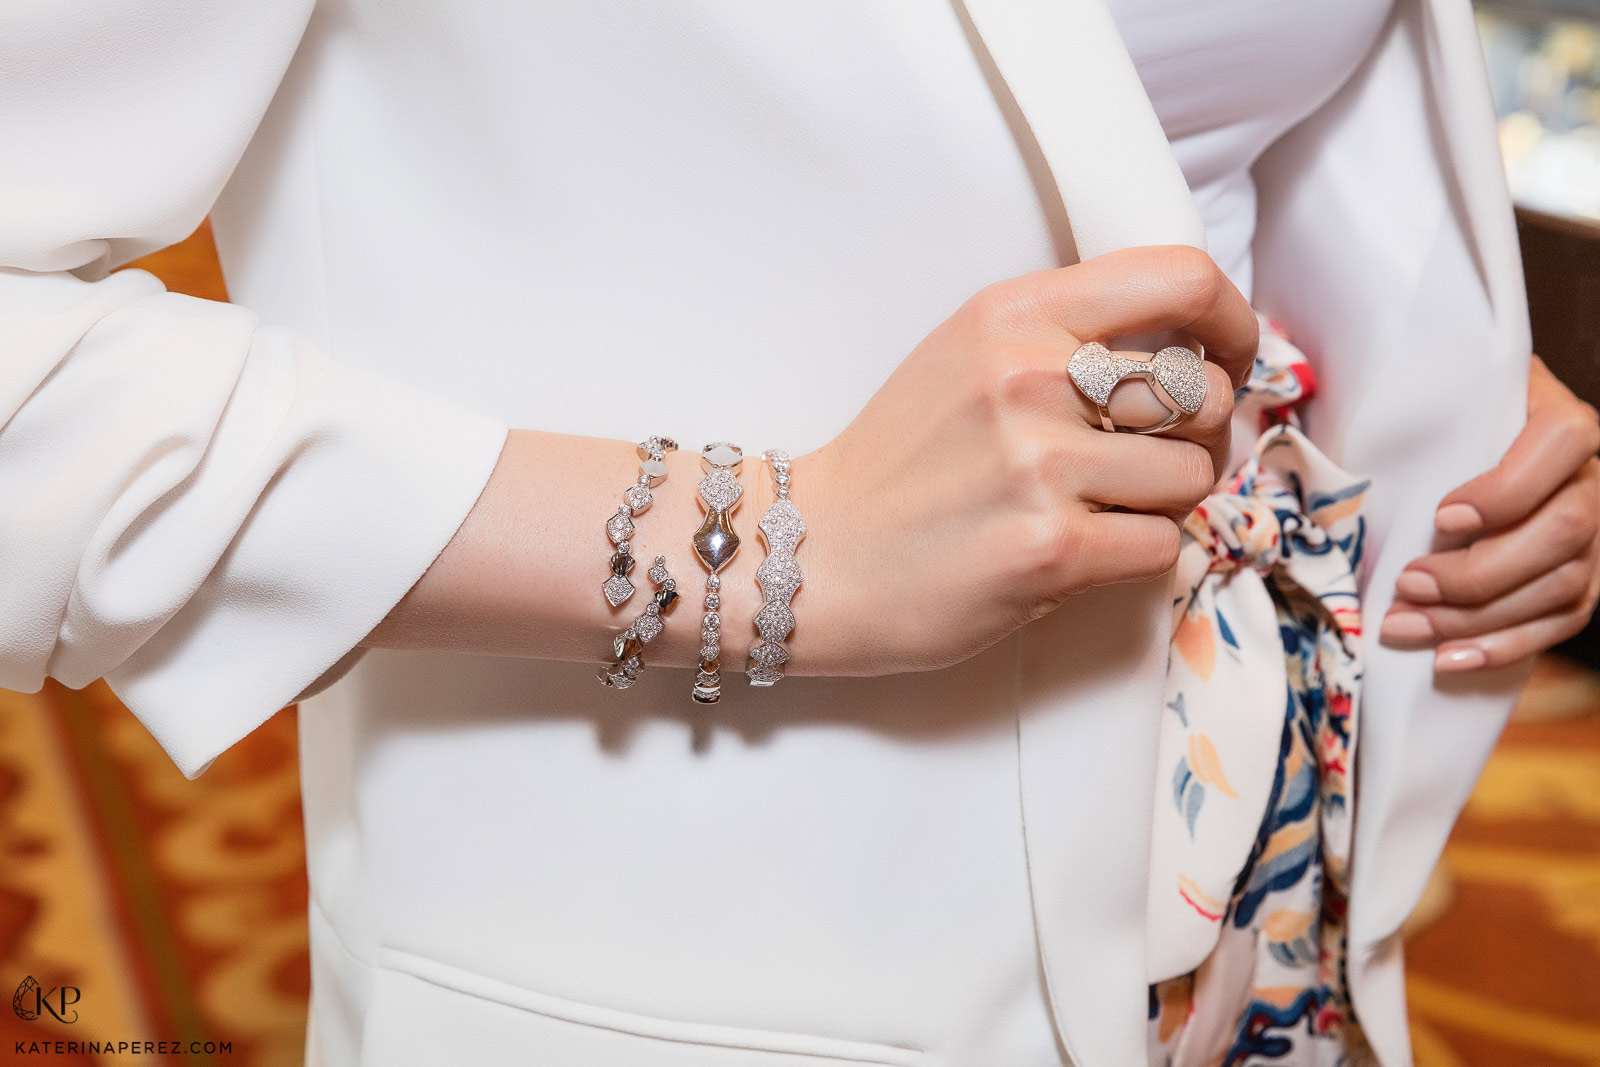 Браслеты и кольцо Akillis Python с бриллиантовым паве. Фото: Simon Martner